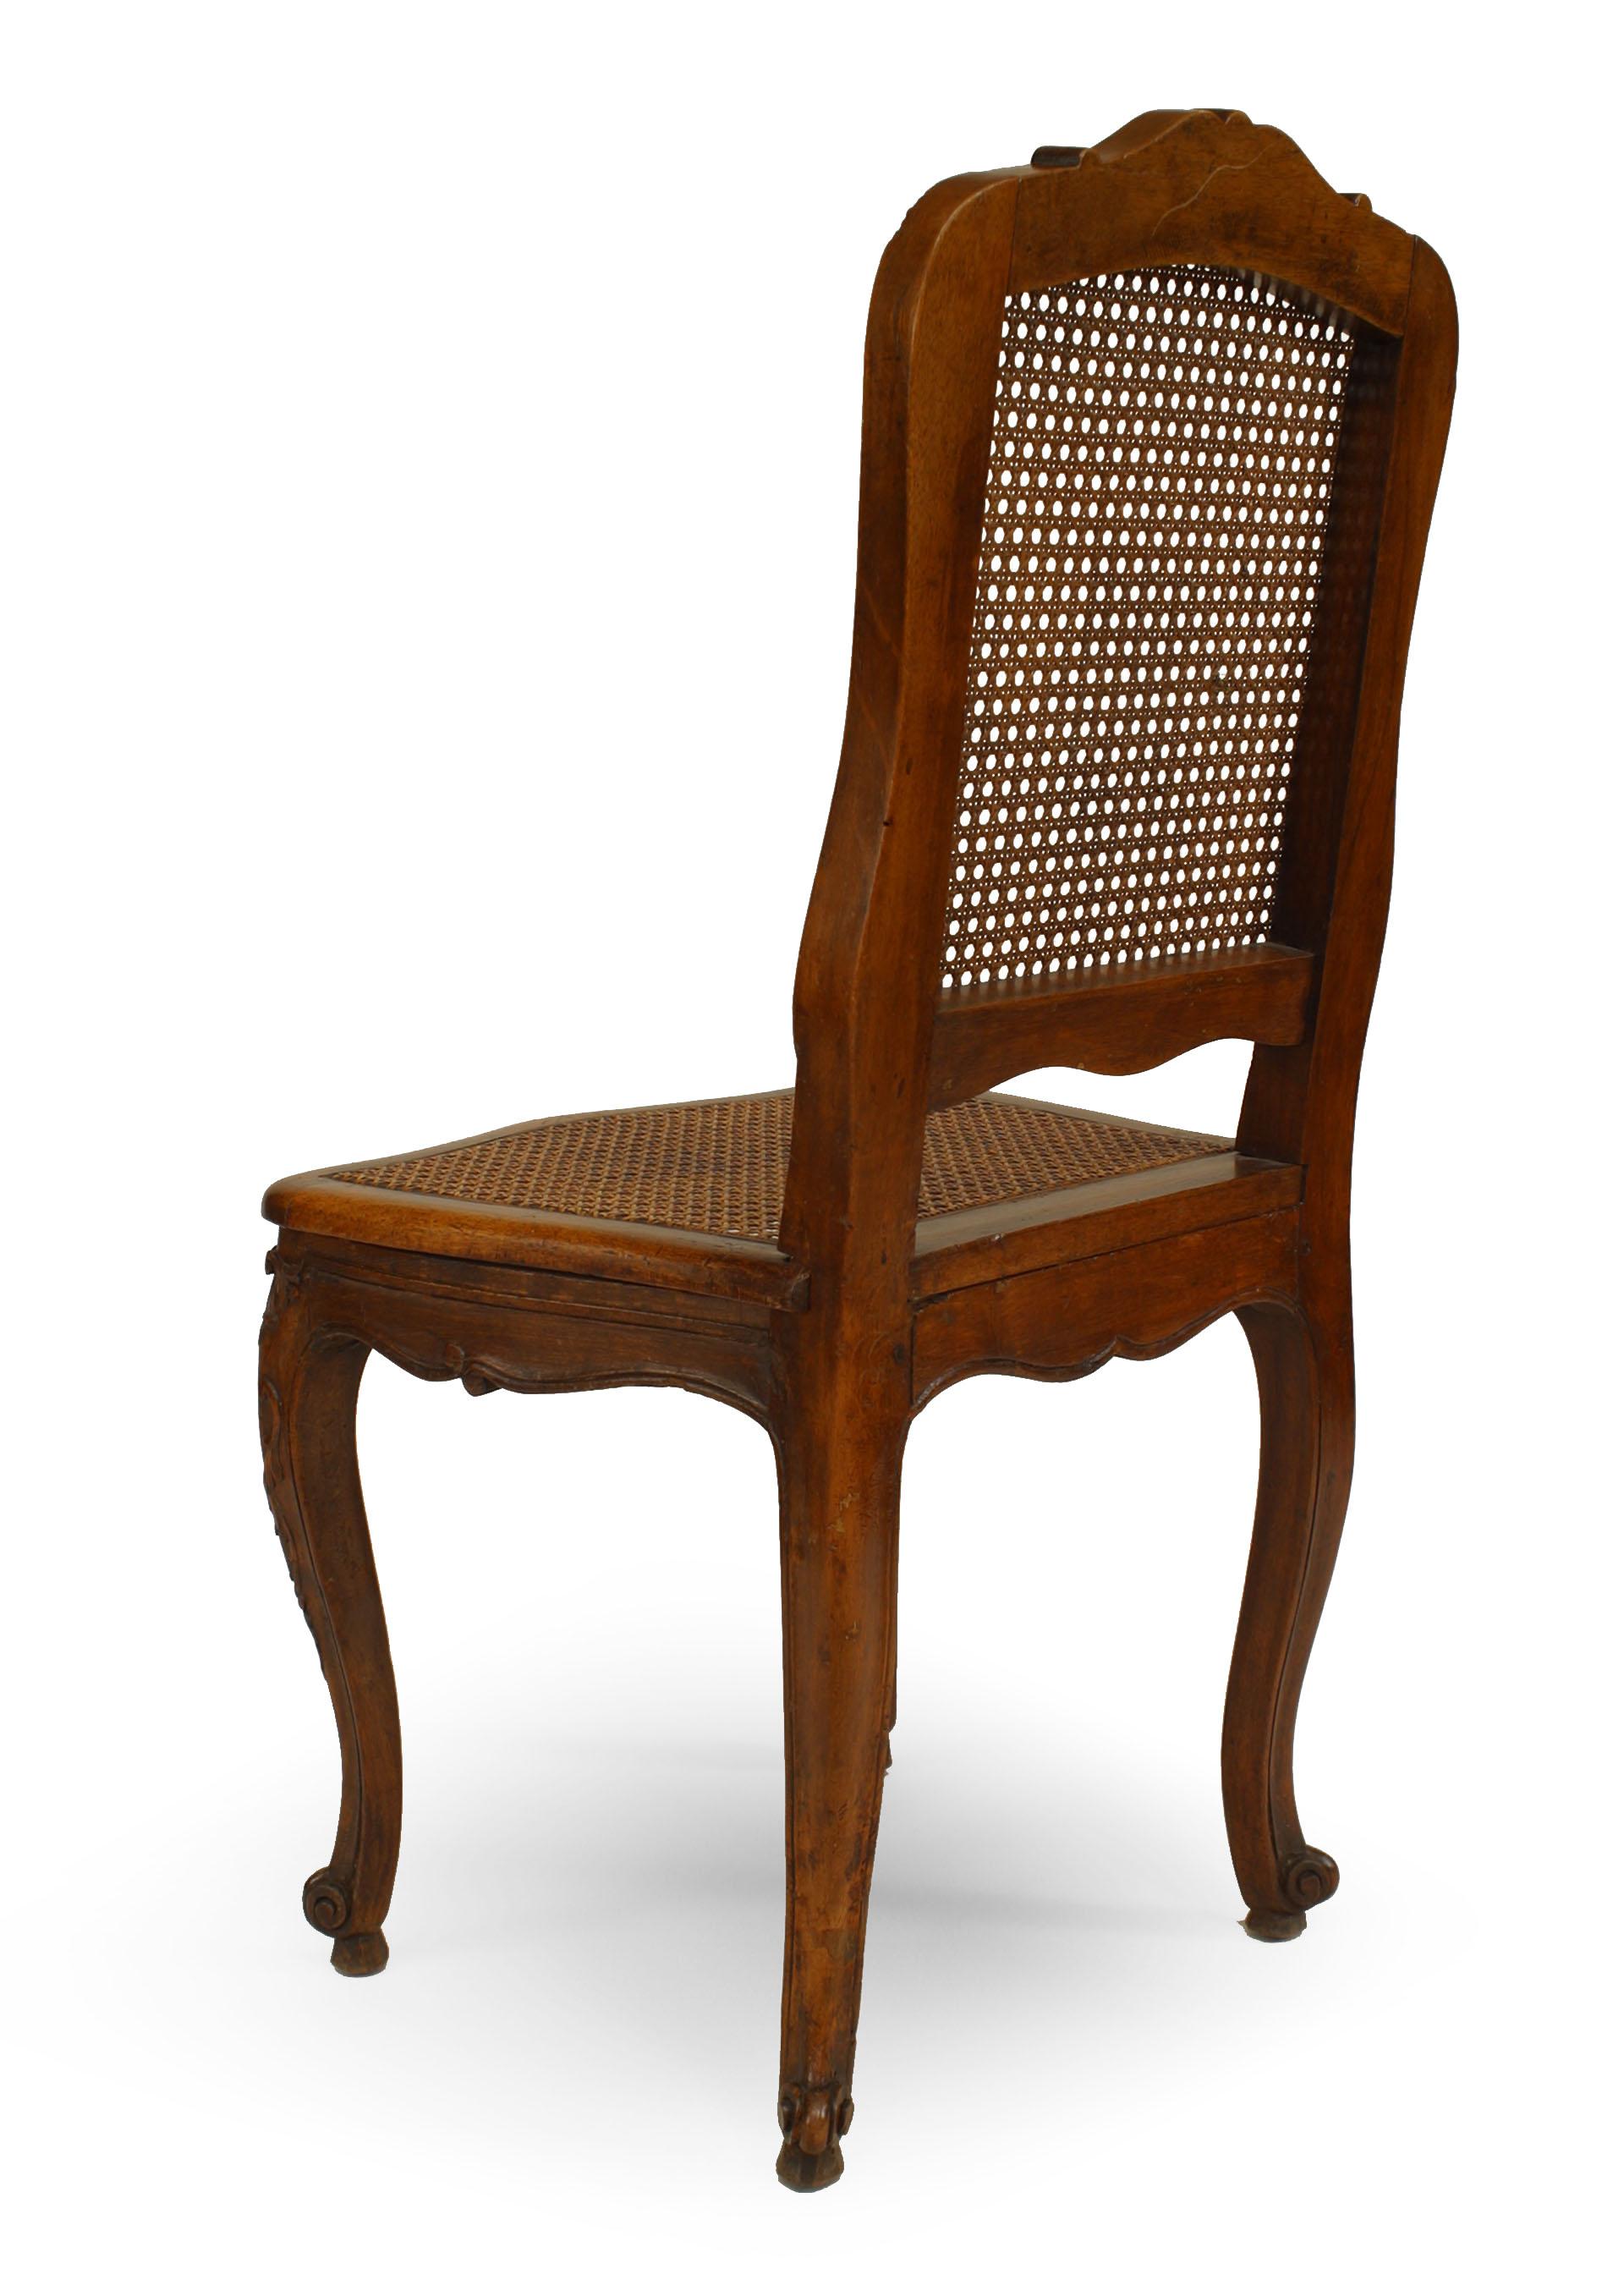 Satz von 12 französischen Beistellstühlen im Louis XV-Stil aus Nussbaumholz mit Sitz und Rückenlehne aus Schilfrohr (19. Jh.)
 